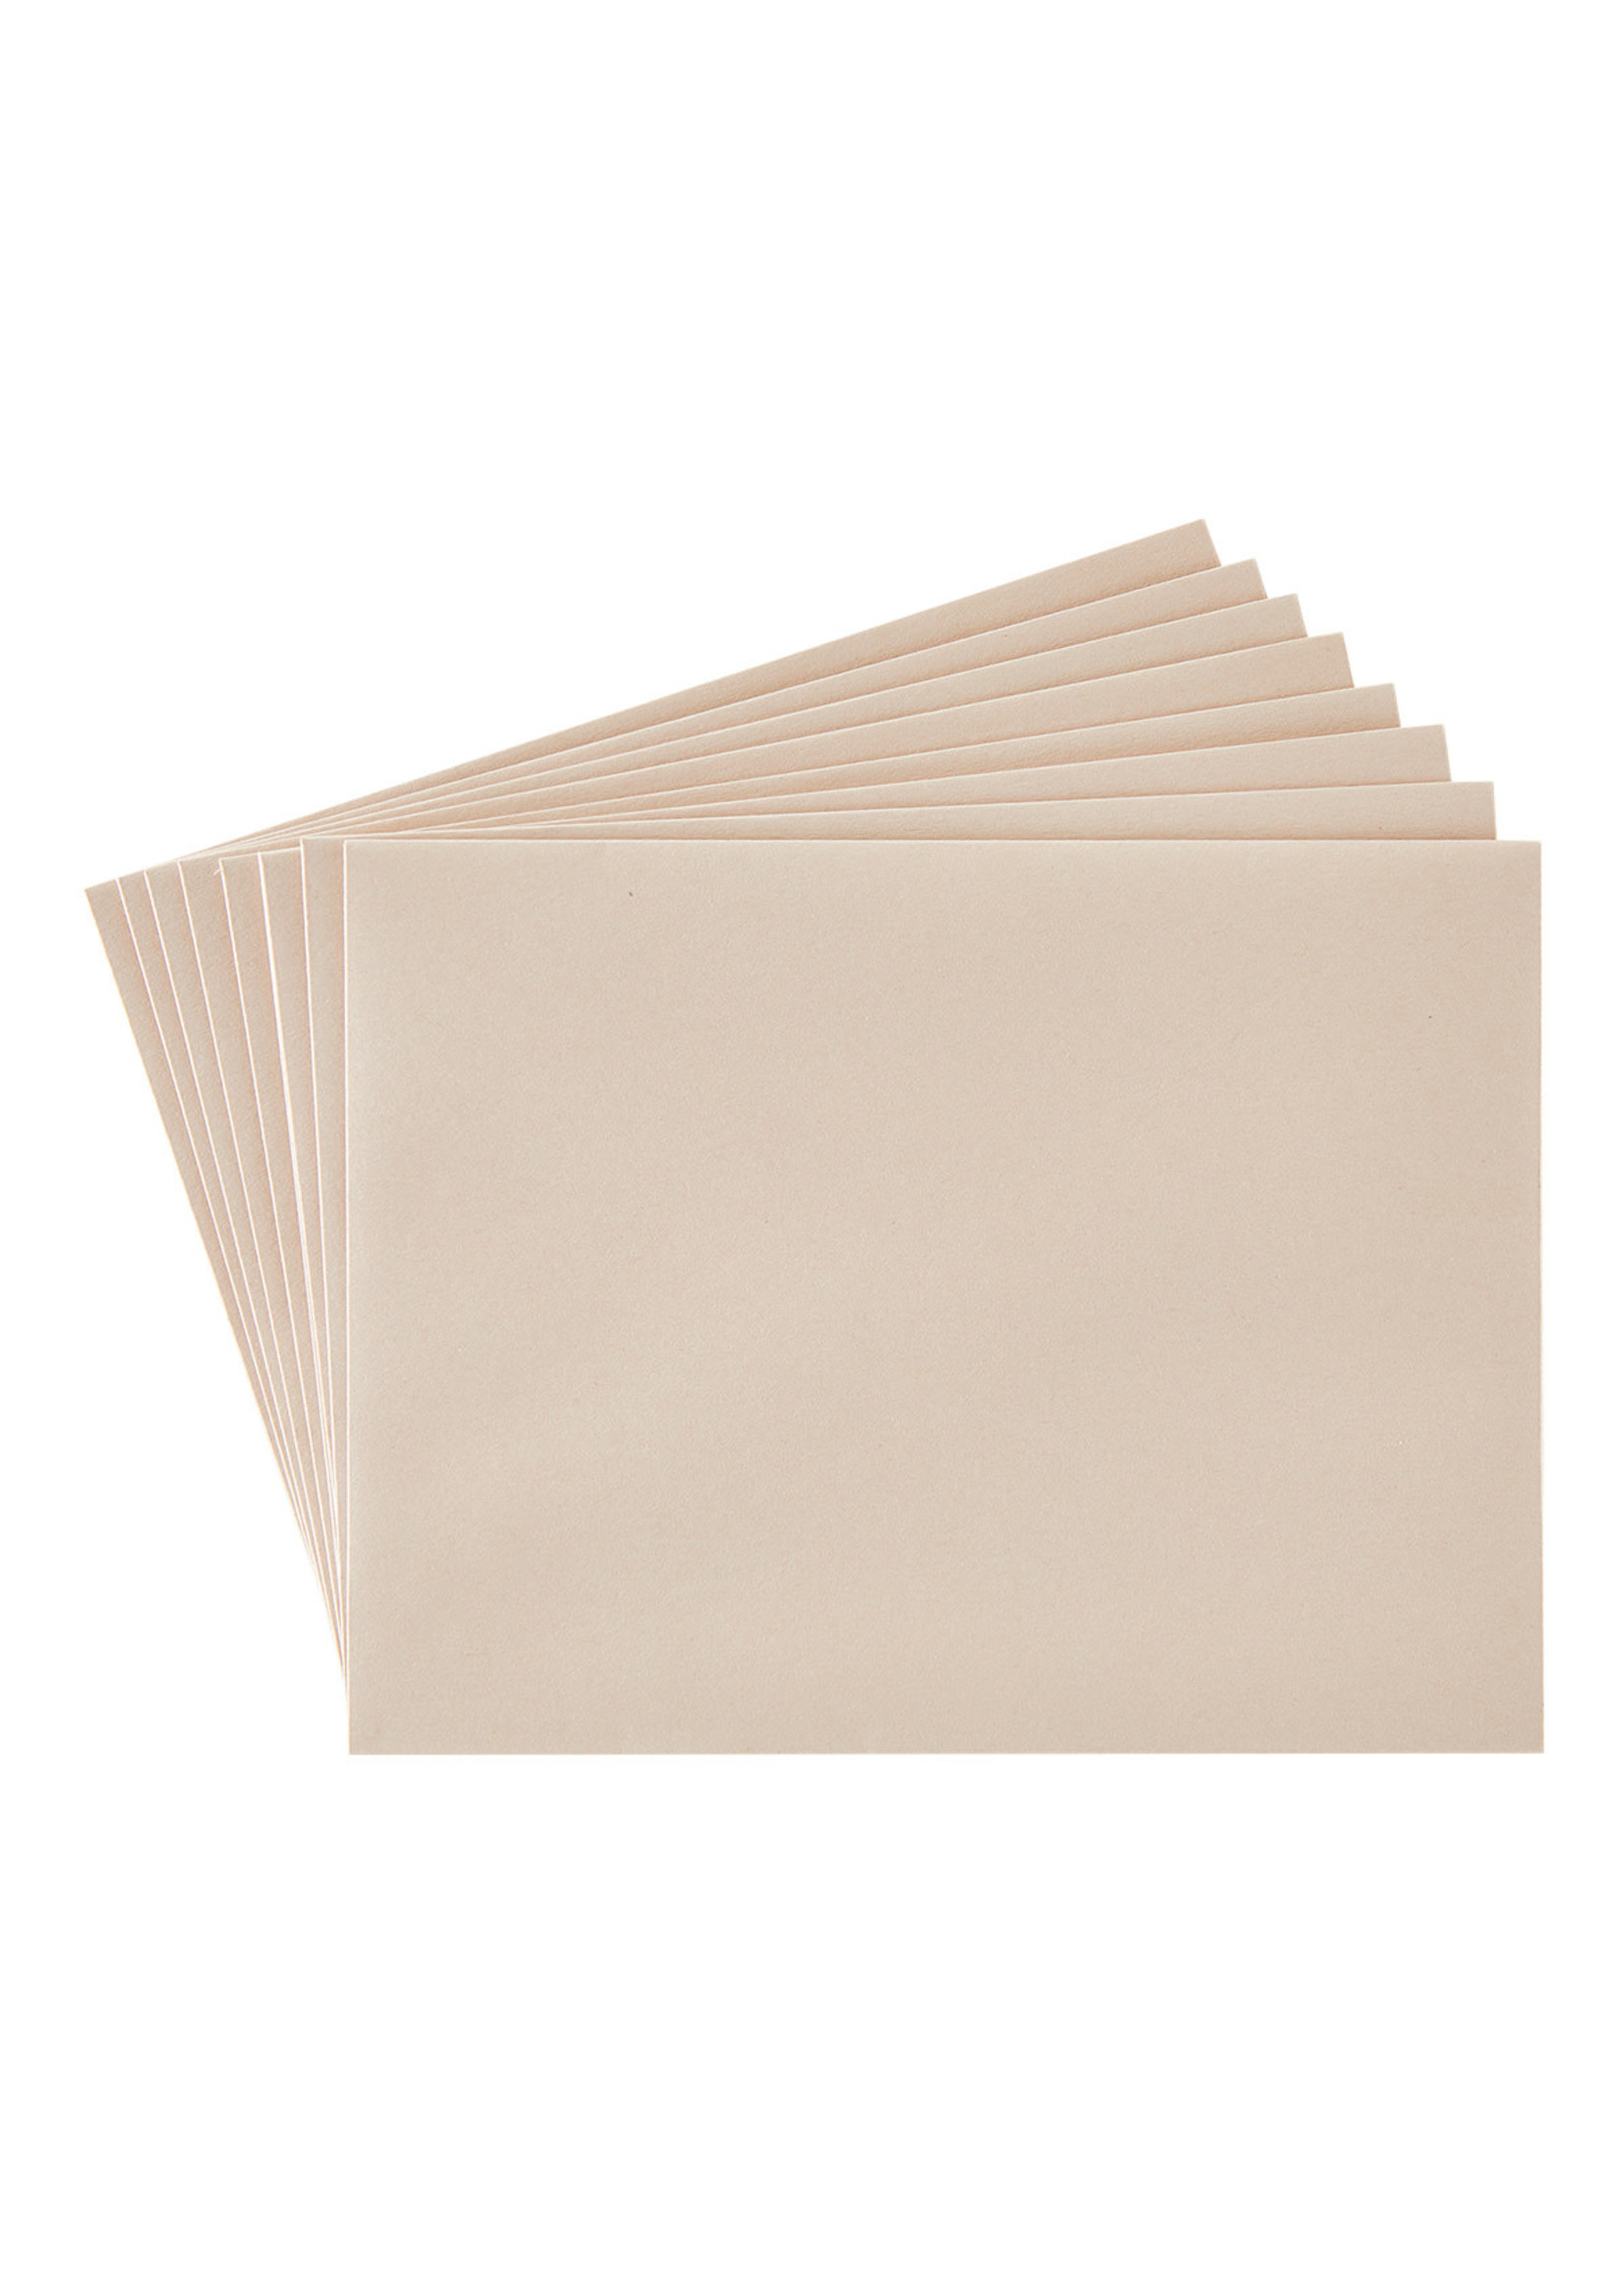 spellbinders A2 Brushed Rose Gold Envelopes